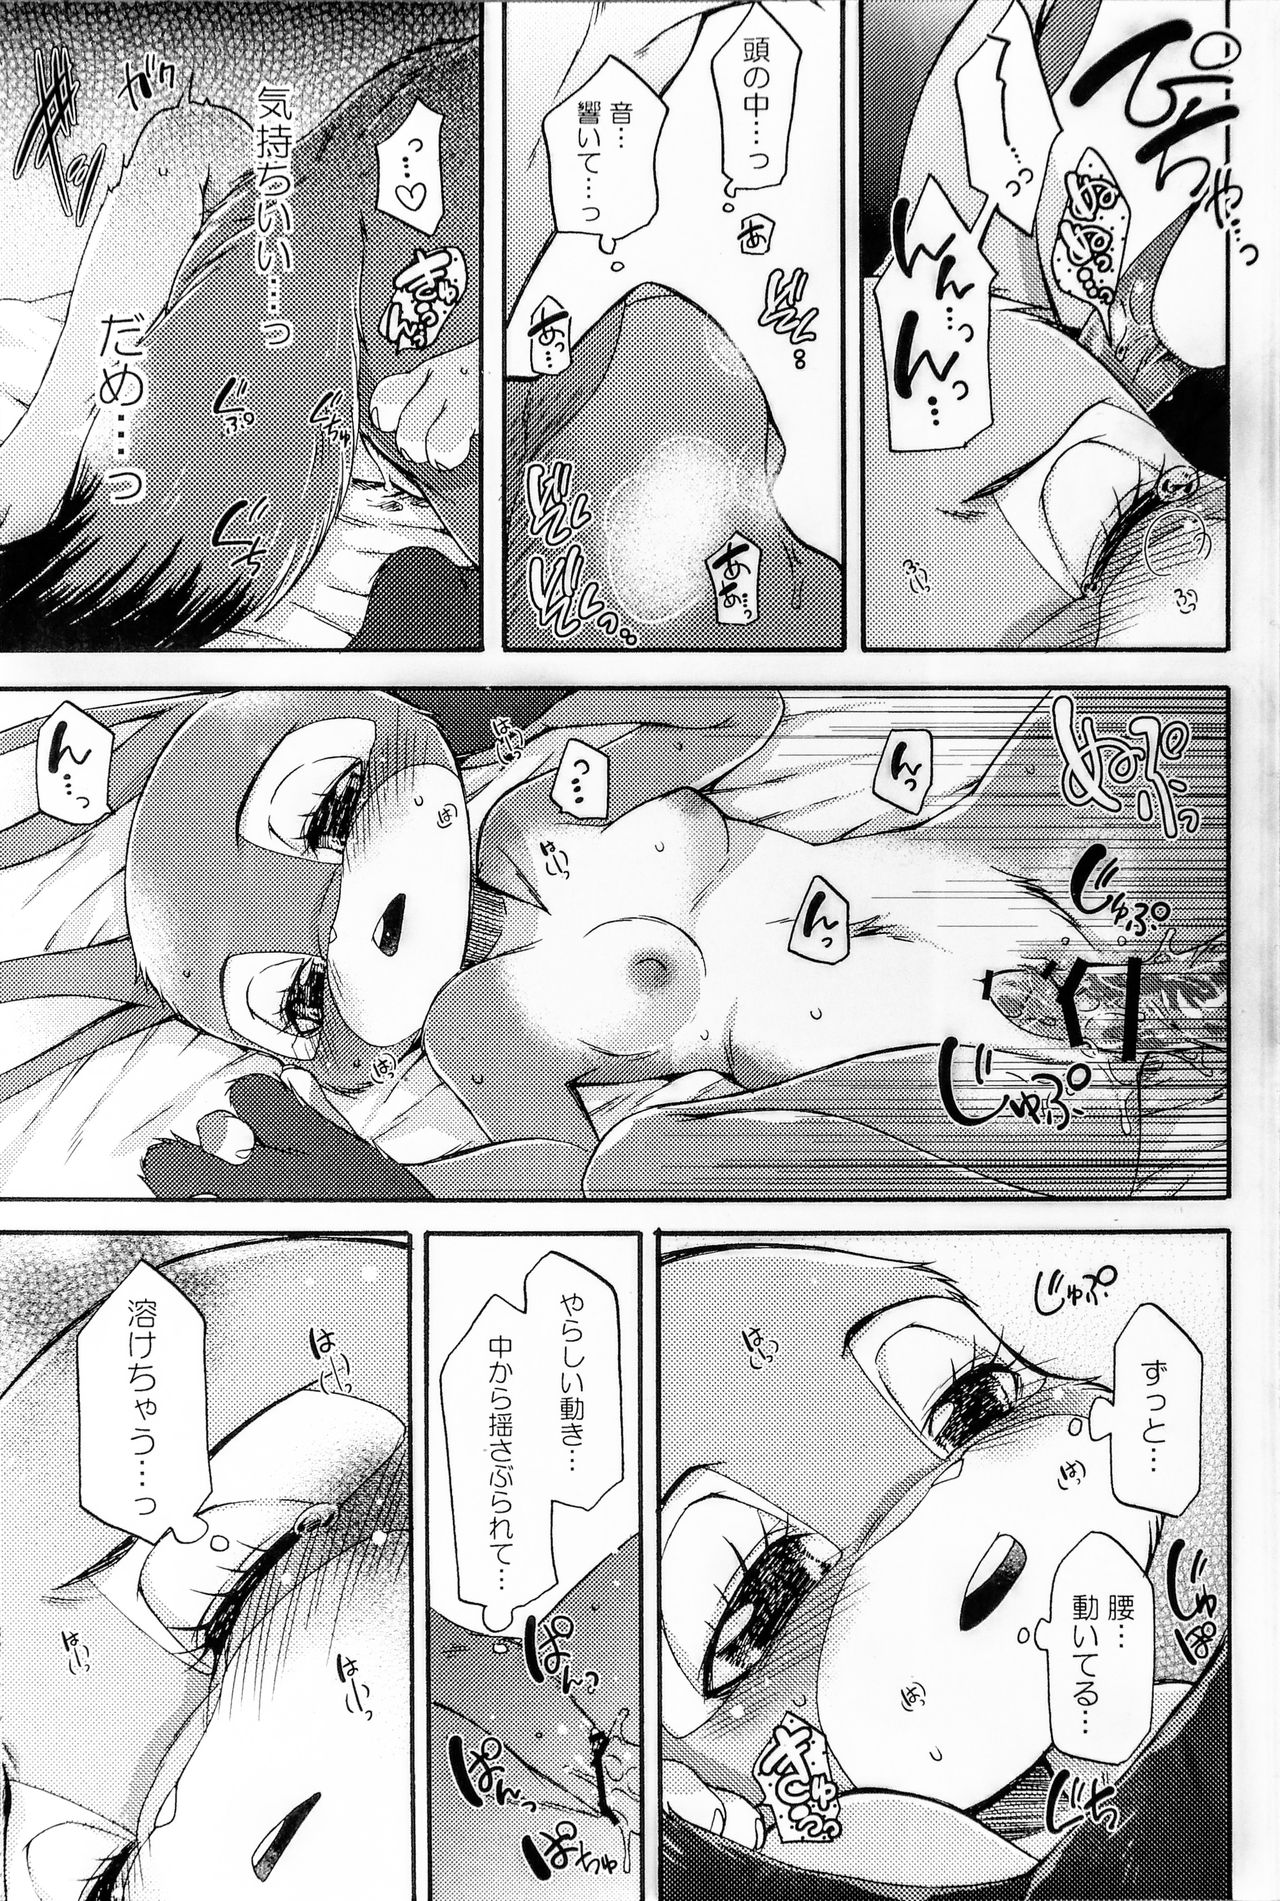 (Kansai! Kemoket 6, SPARK12) [Dogear (Inumimi Moeta)] Naki Rabbit (Zootopia) (関西!けもケット6、SPARK12) [Dogear (犬耳もえ太)] ナキウサギ (ズートピア)